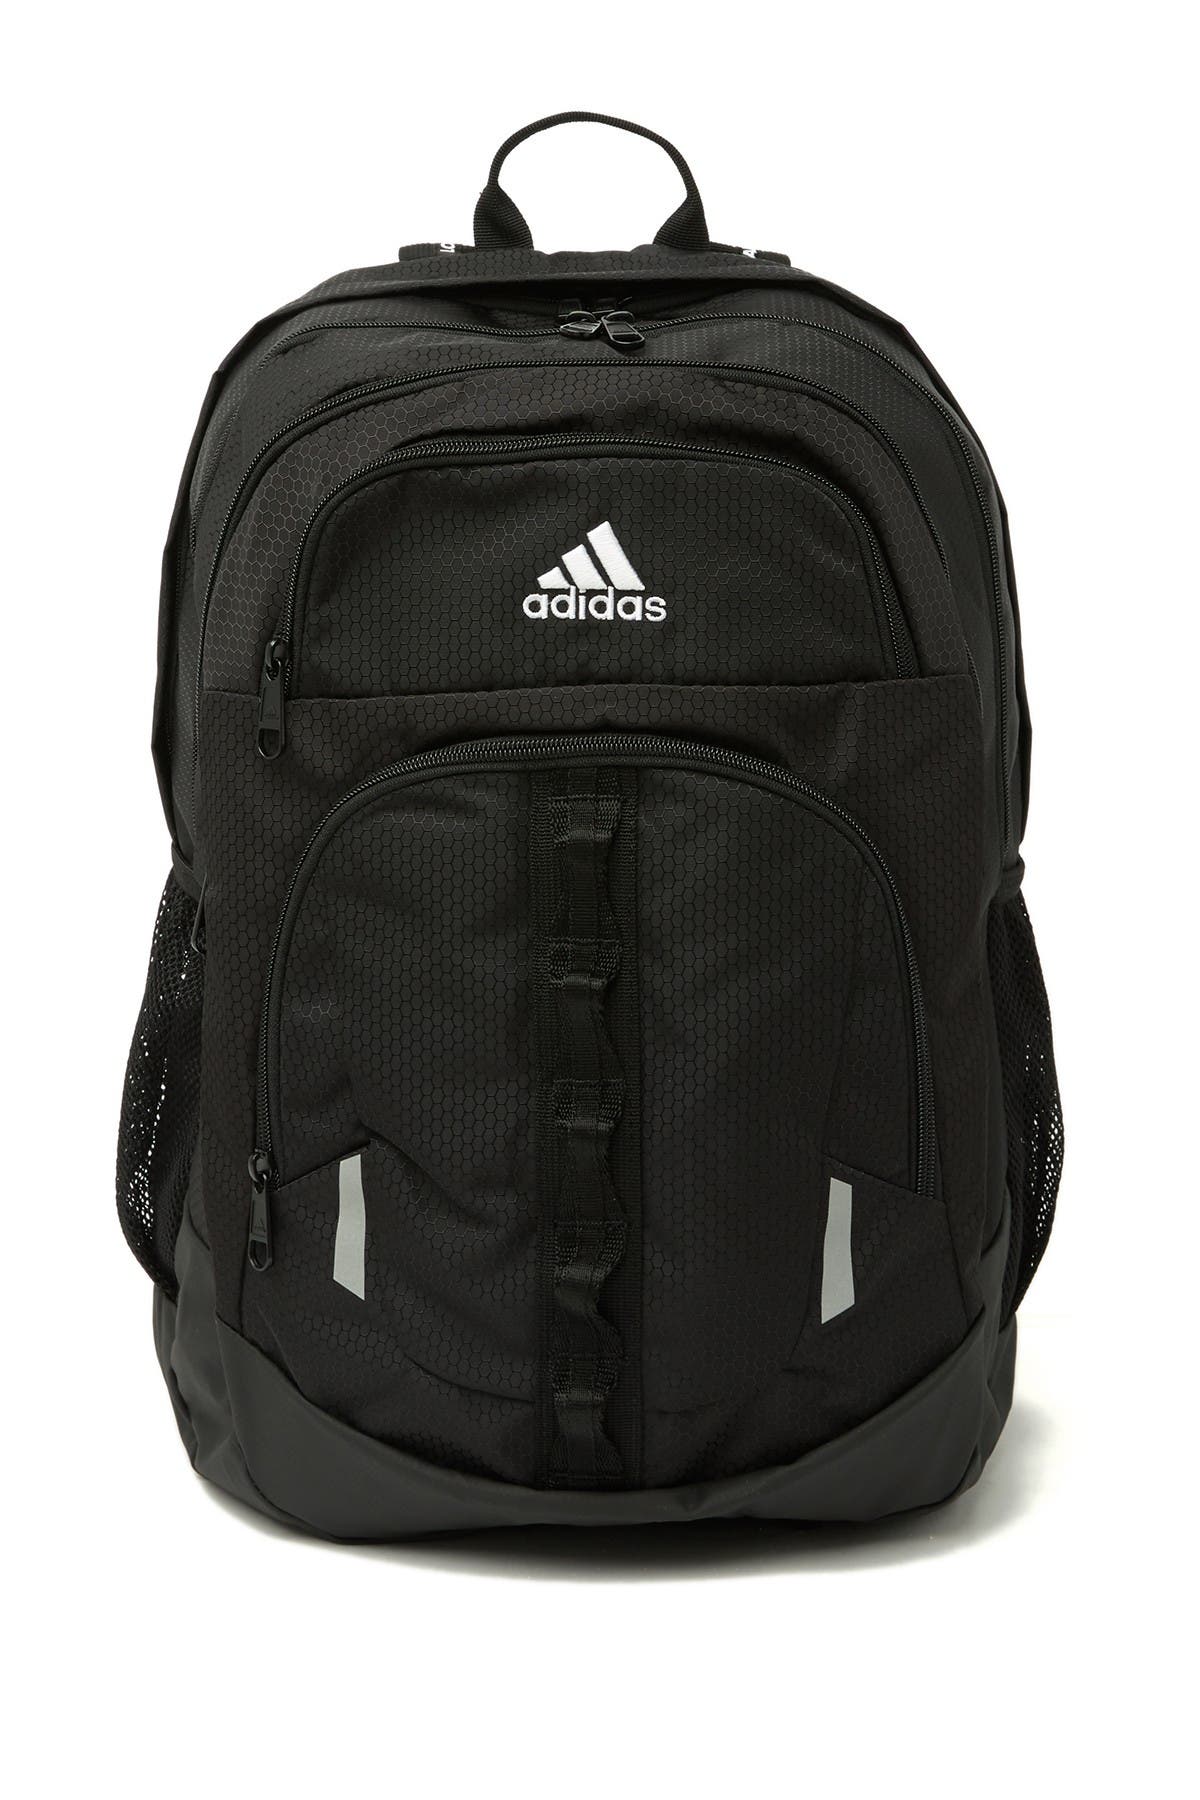 adidas | Prime V Backpack | Nordstrom Rack